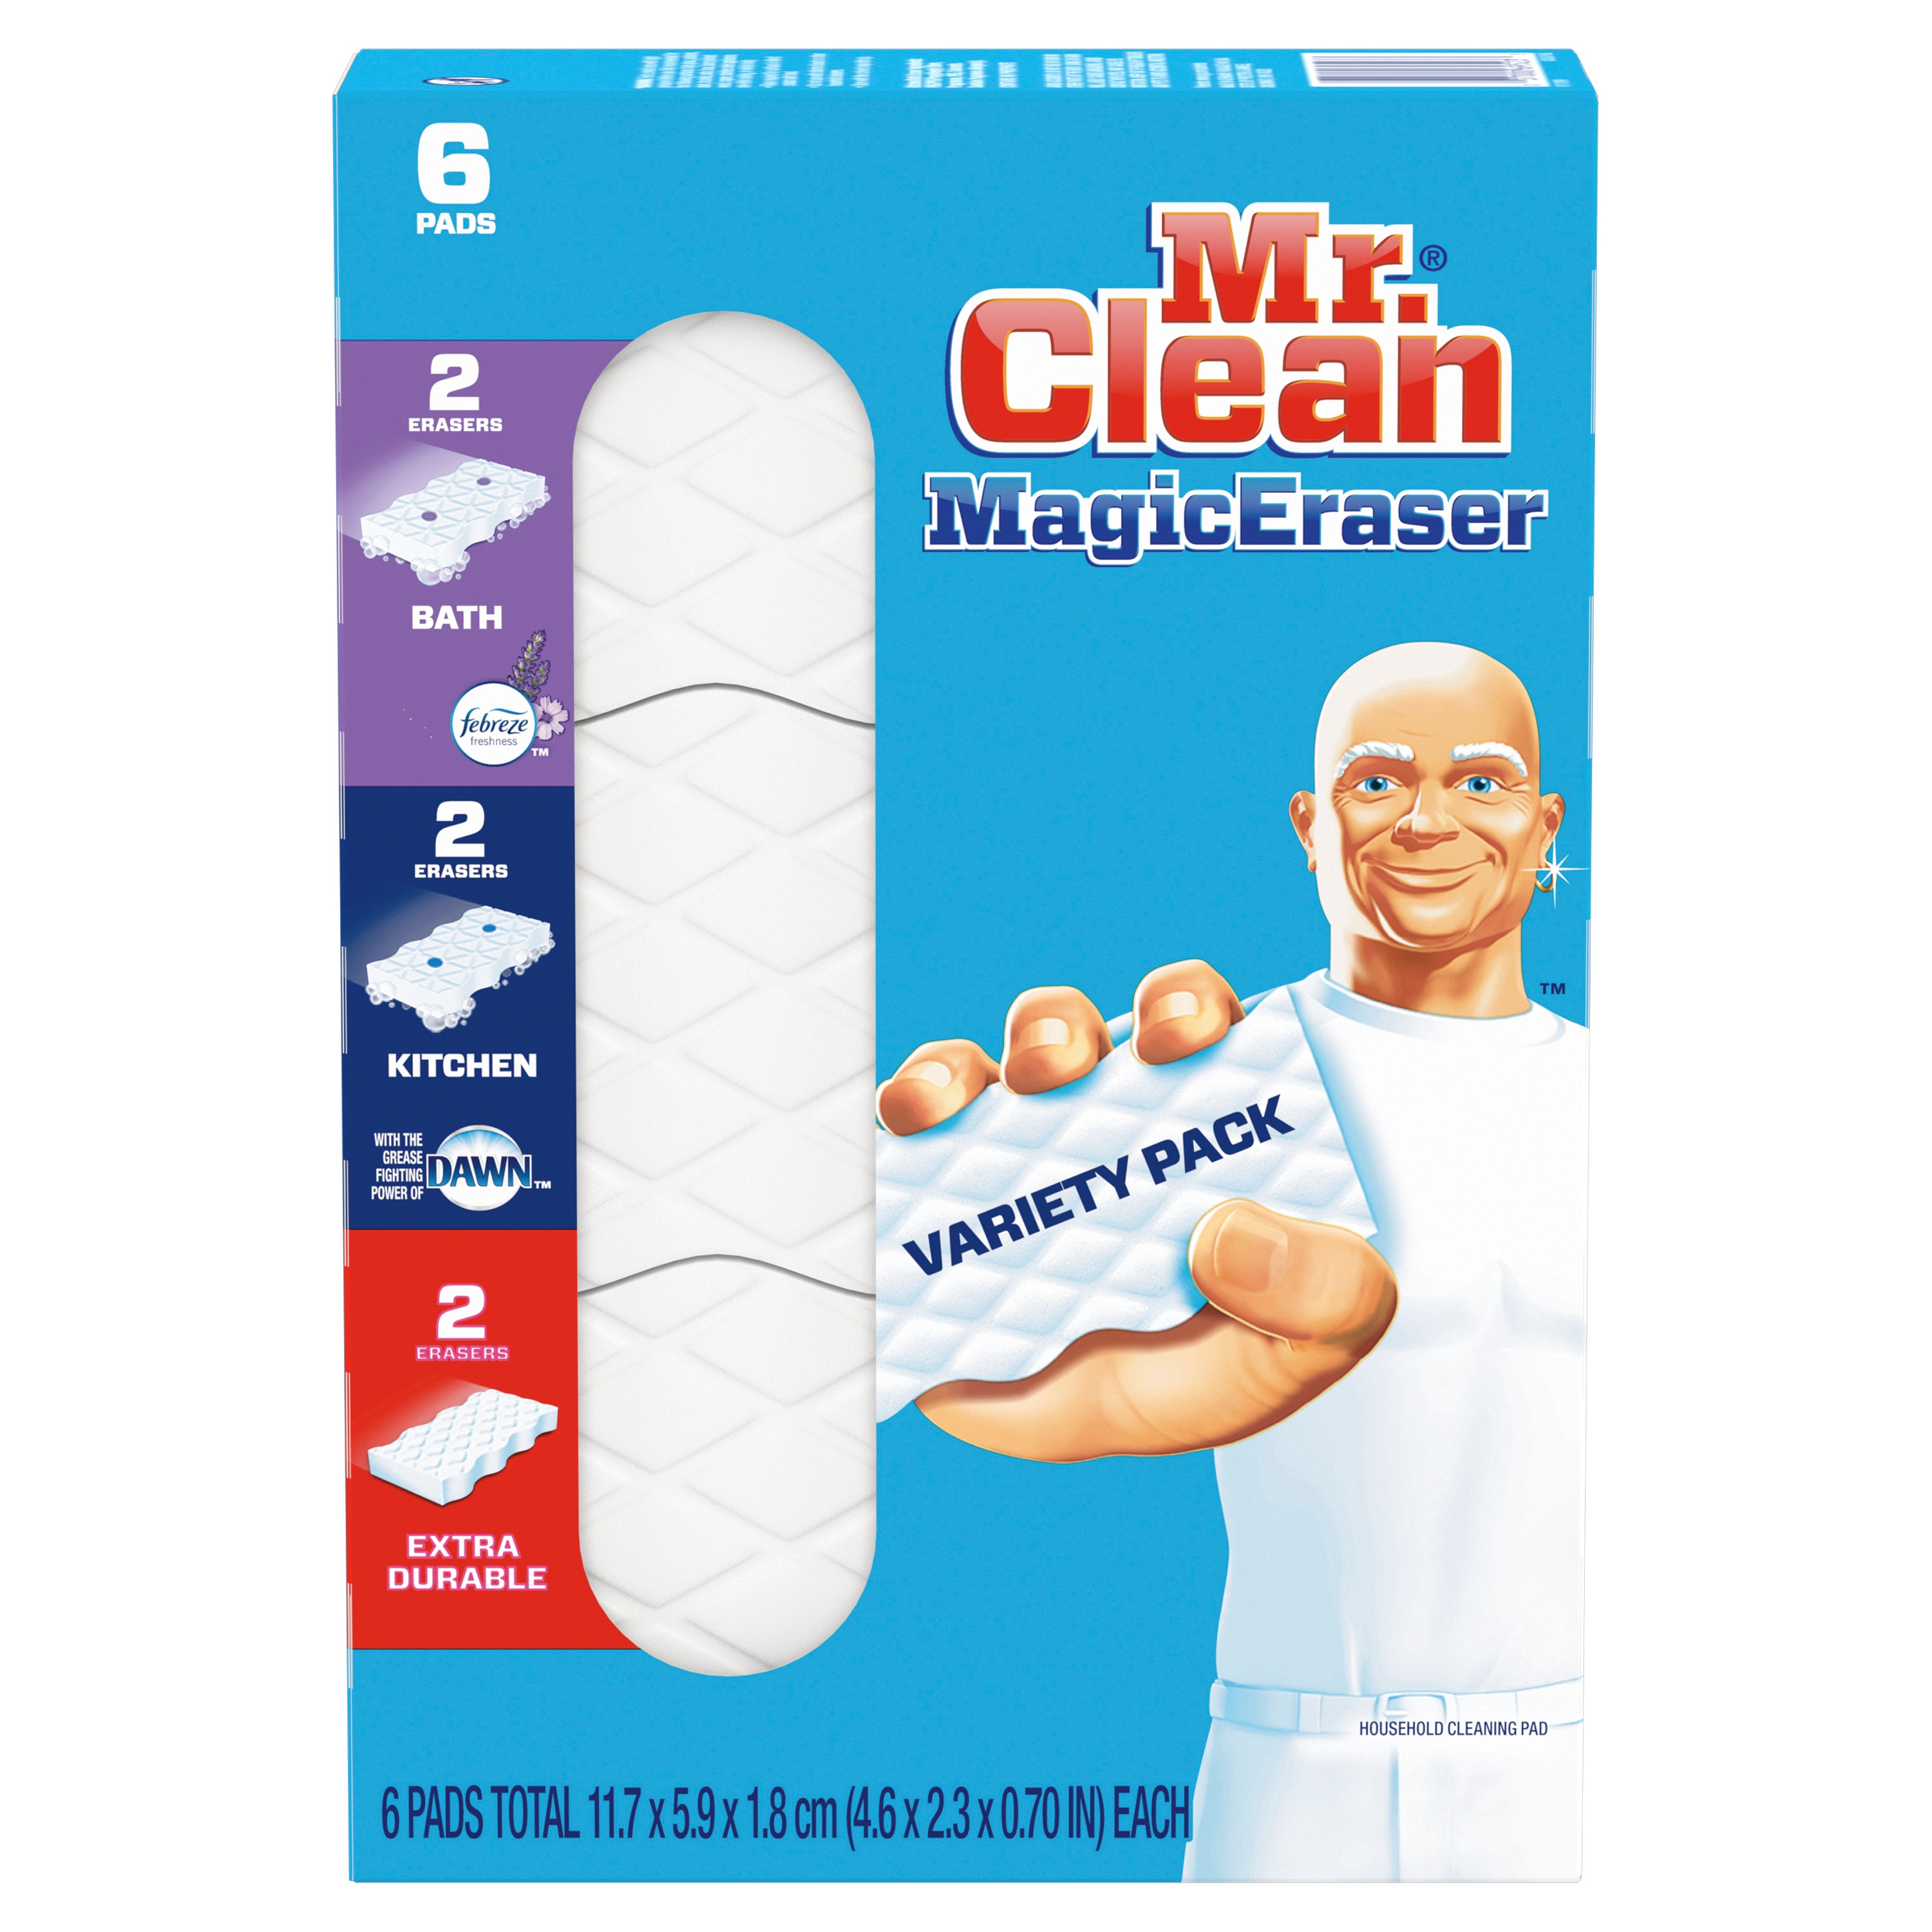 Mr. Clean Magic Eraser làm sạch vết bẩn mà không cần sử dụng hóa chất hoặc nước rửa mặt, giúp bạn tiết kiệm thời gian và công sức. Gói đa dạng 6 chiếc đảm bảo rằng bạn có đủ số lượng để sử dụng trong nhiều ứng dụng khác nhau trong nhà của bạn. Hãy tận hưởng sự tiện lợi của sản phẩm này để có được không gian sống sạch sẽ và gọn gàng hơn.